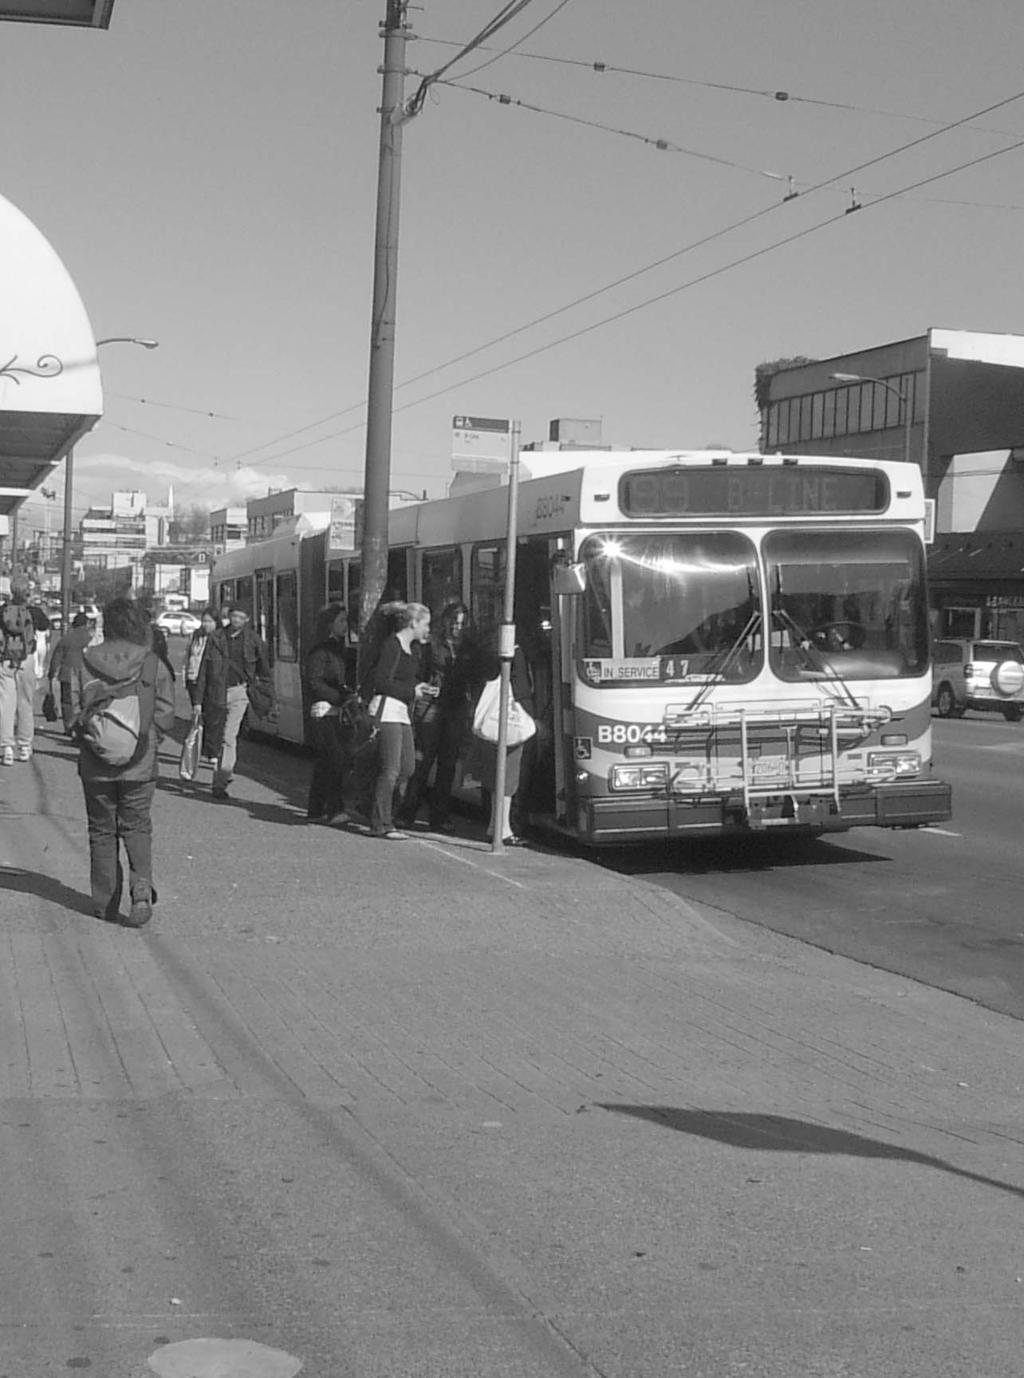 Transit Vancouver Transportation lan